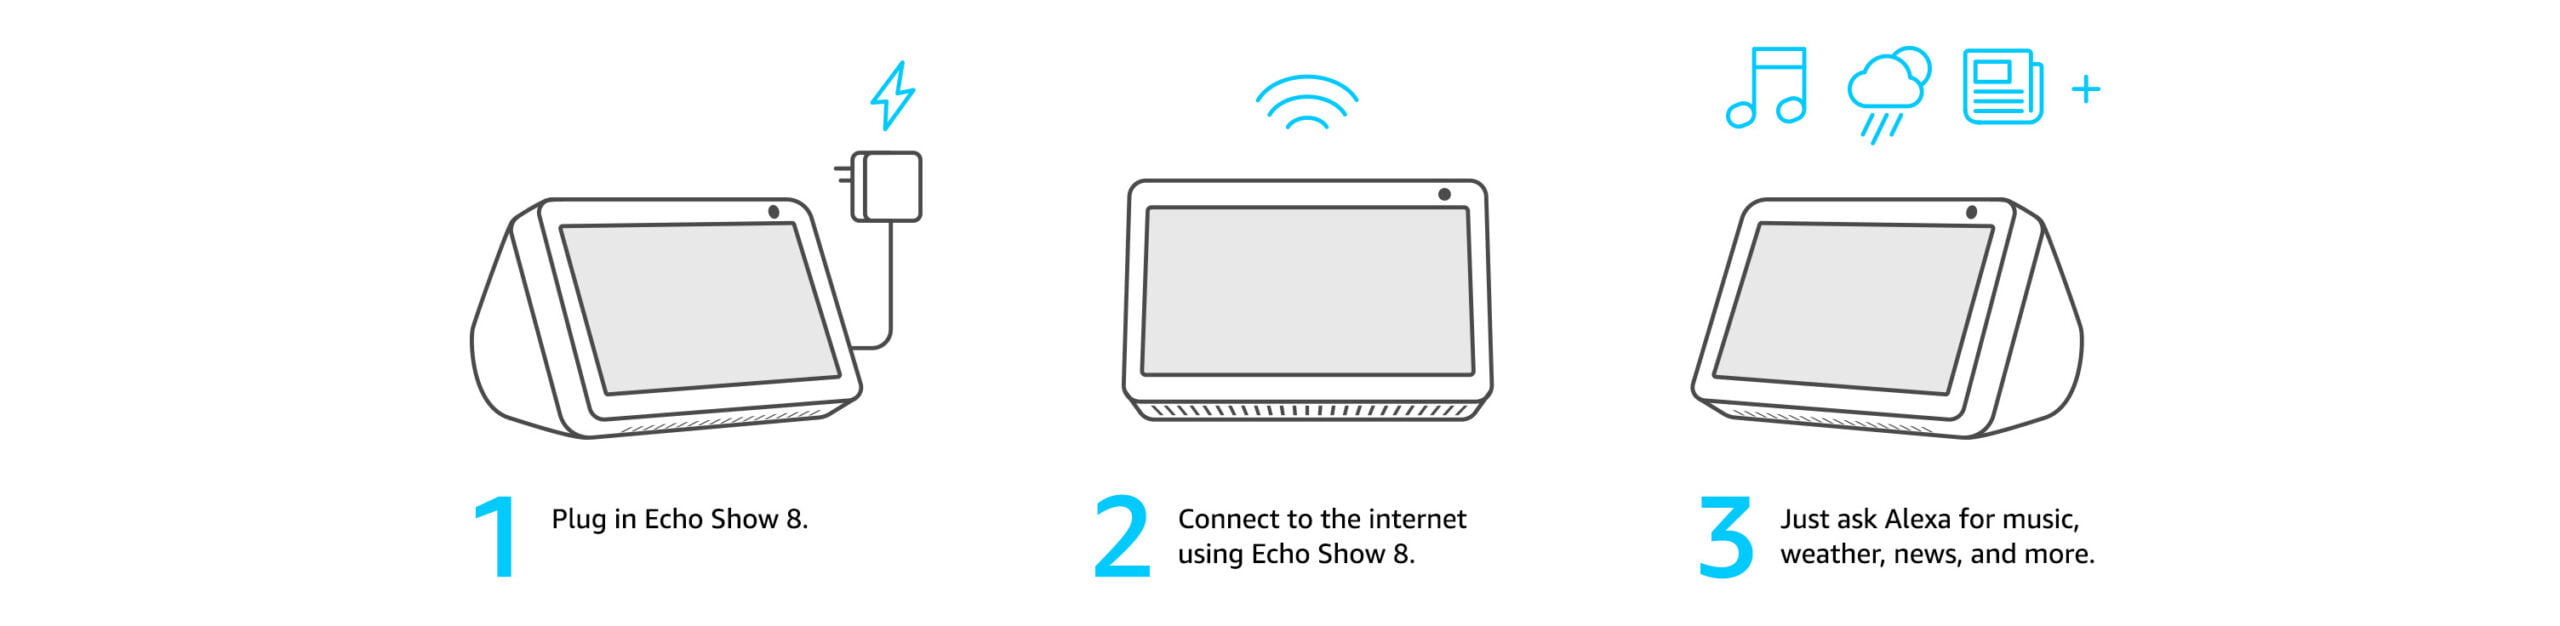 Echo Show 8 setup